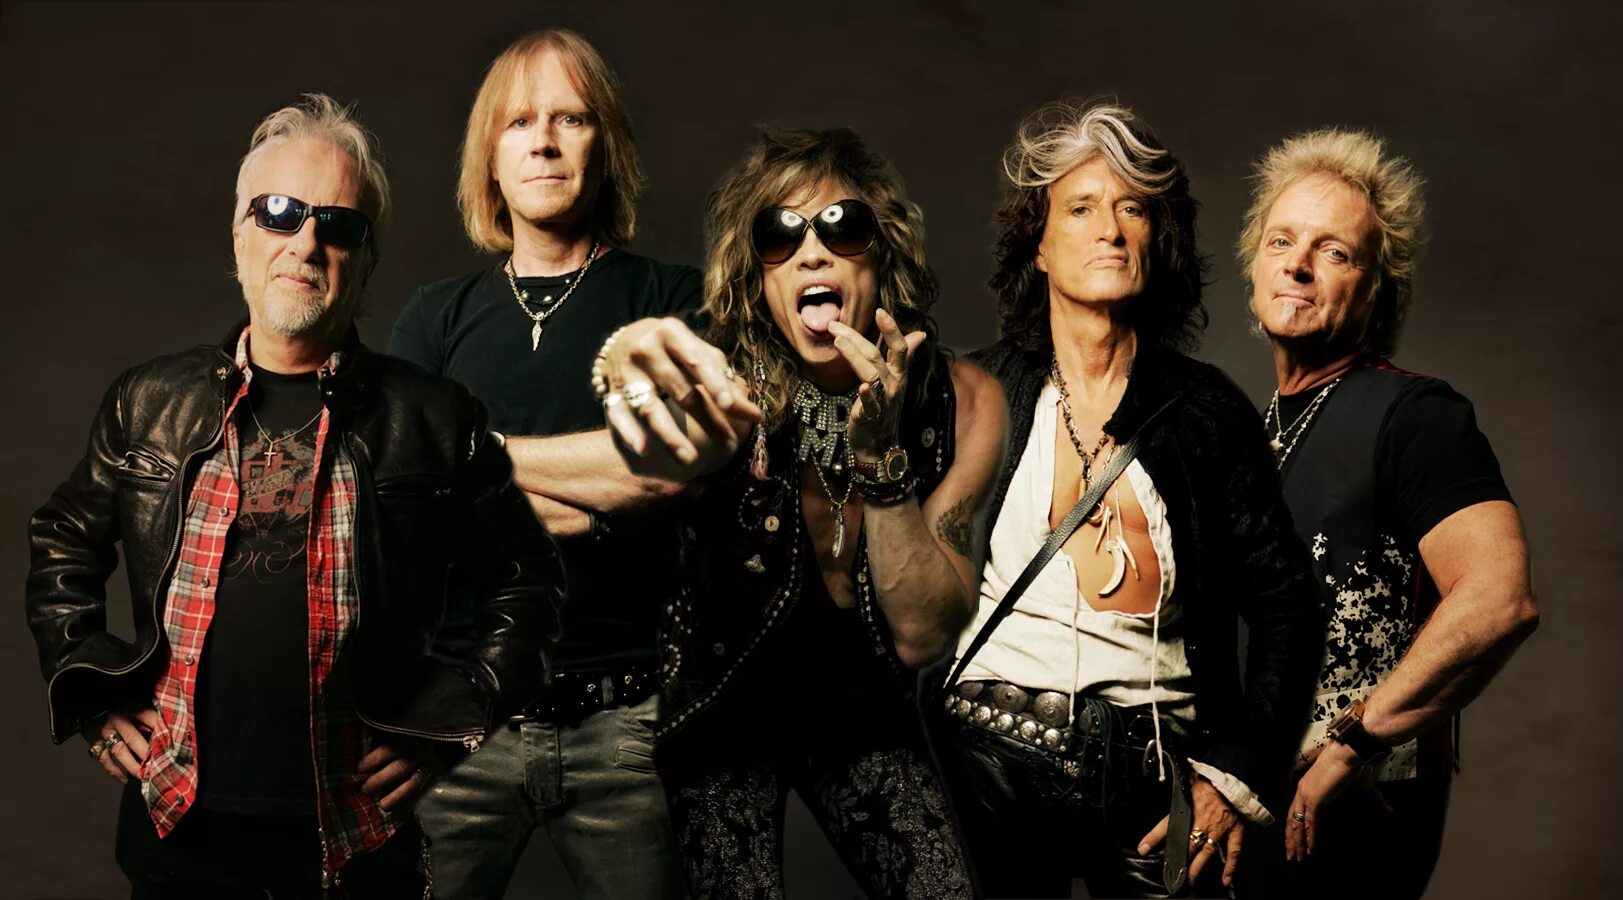 Группа Aerosmith. Аэросмит фото группы. Рок музыкант аэросмит. Aerosmith 1991. Известные группы музыки